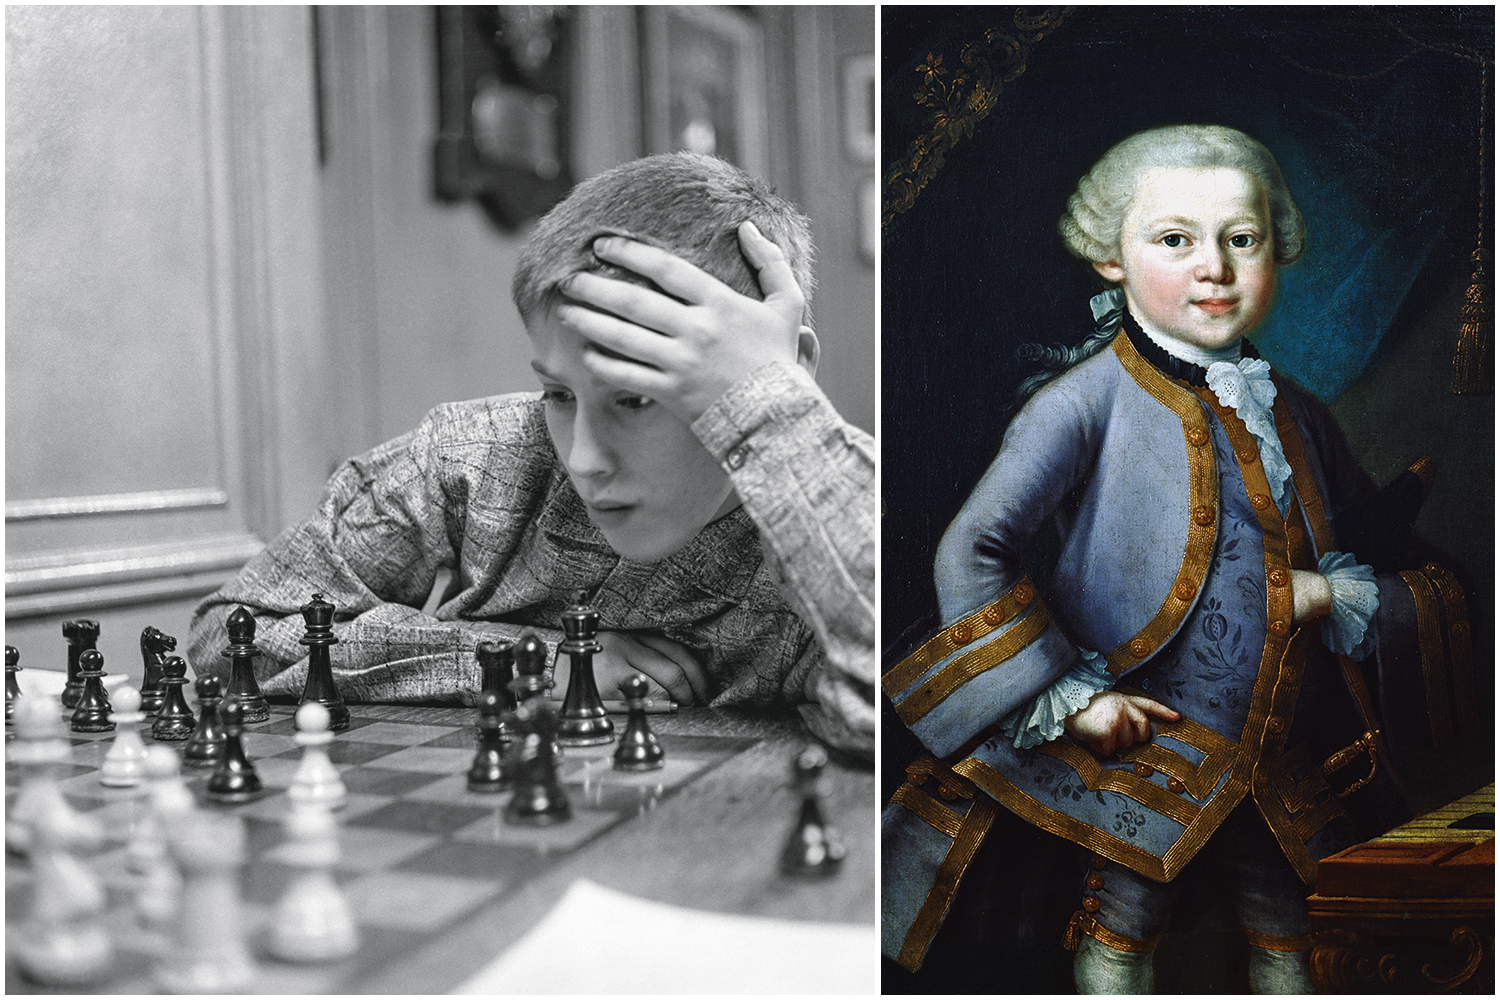 Mae de Bobby Fischer era o génio da família.